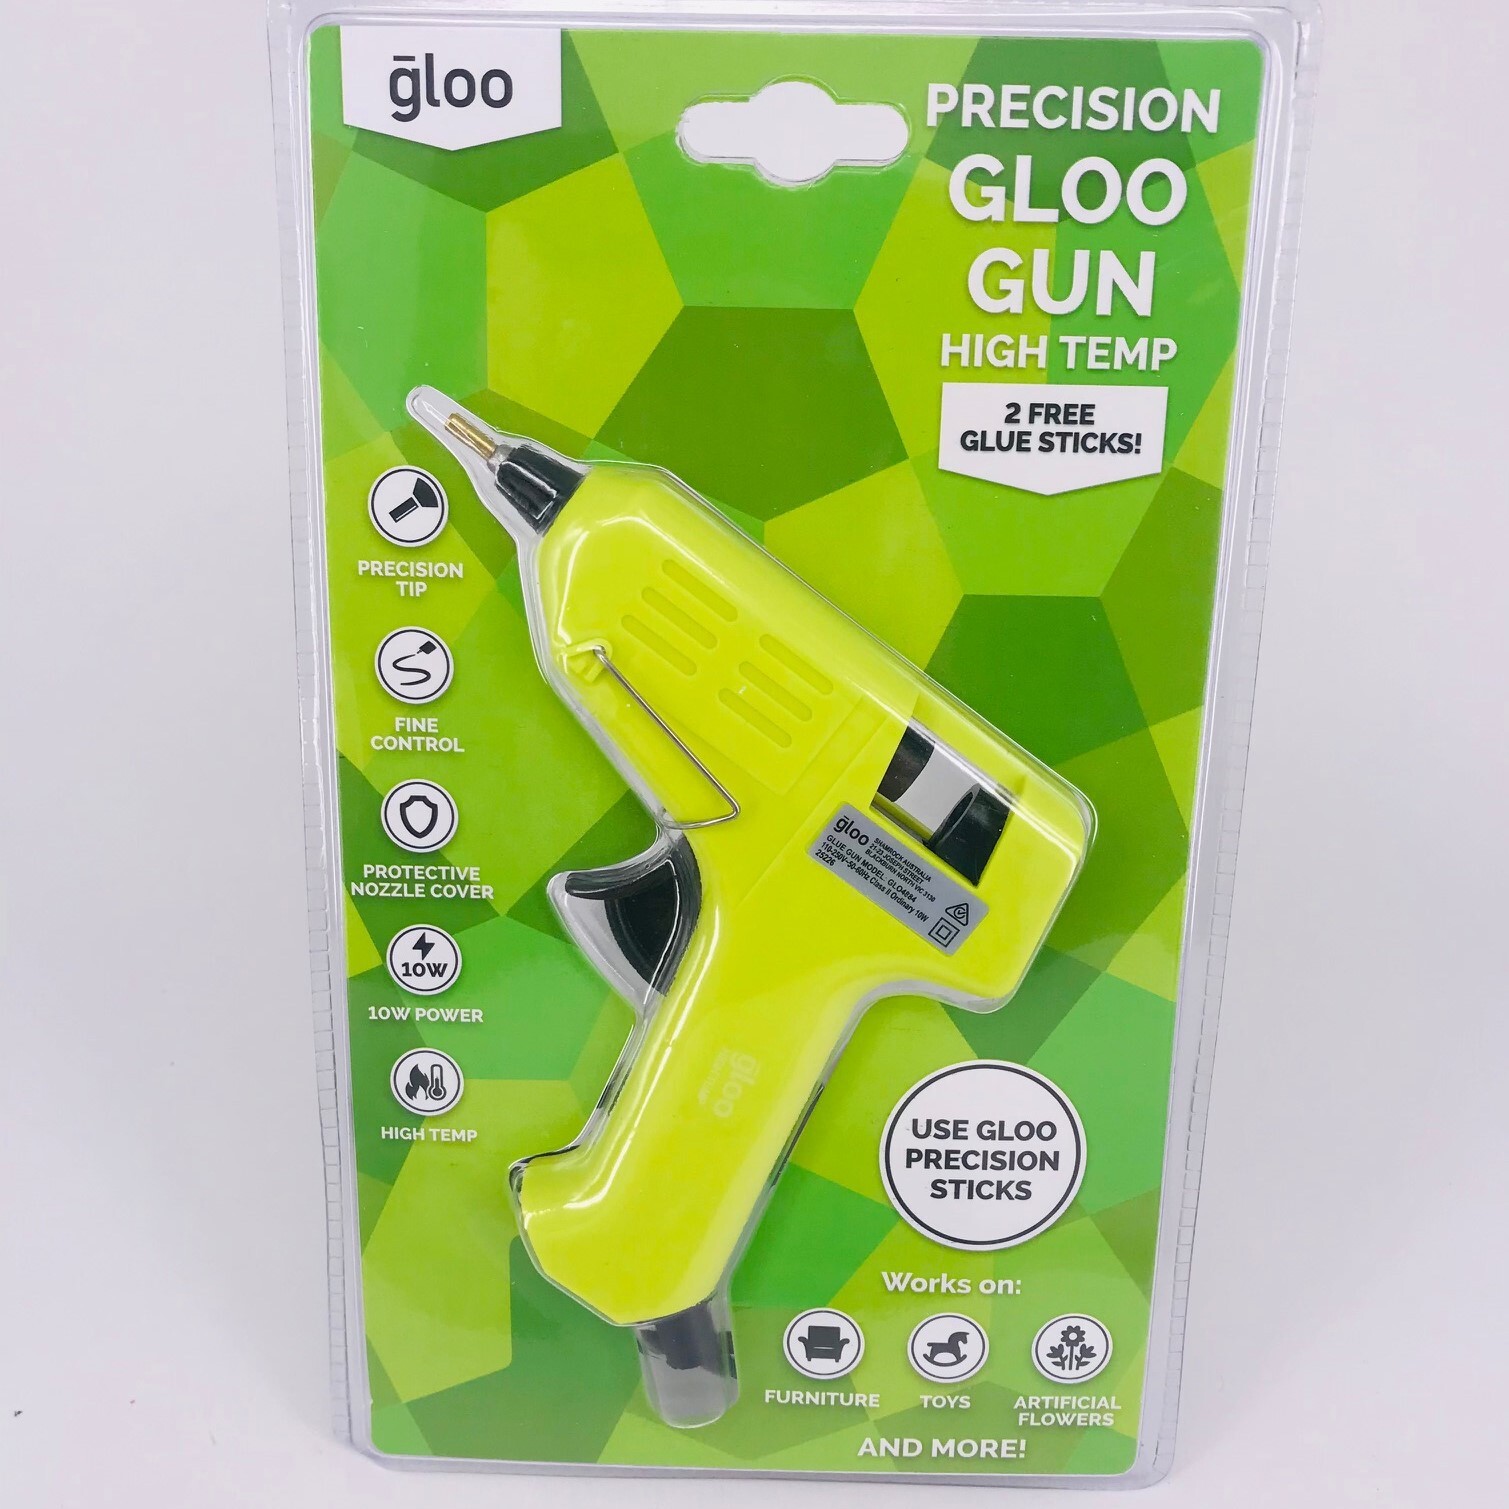 Gloo Glue Gun High Temp with Precision Nozzle